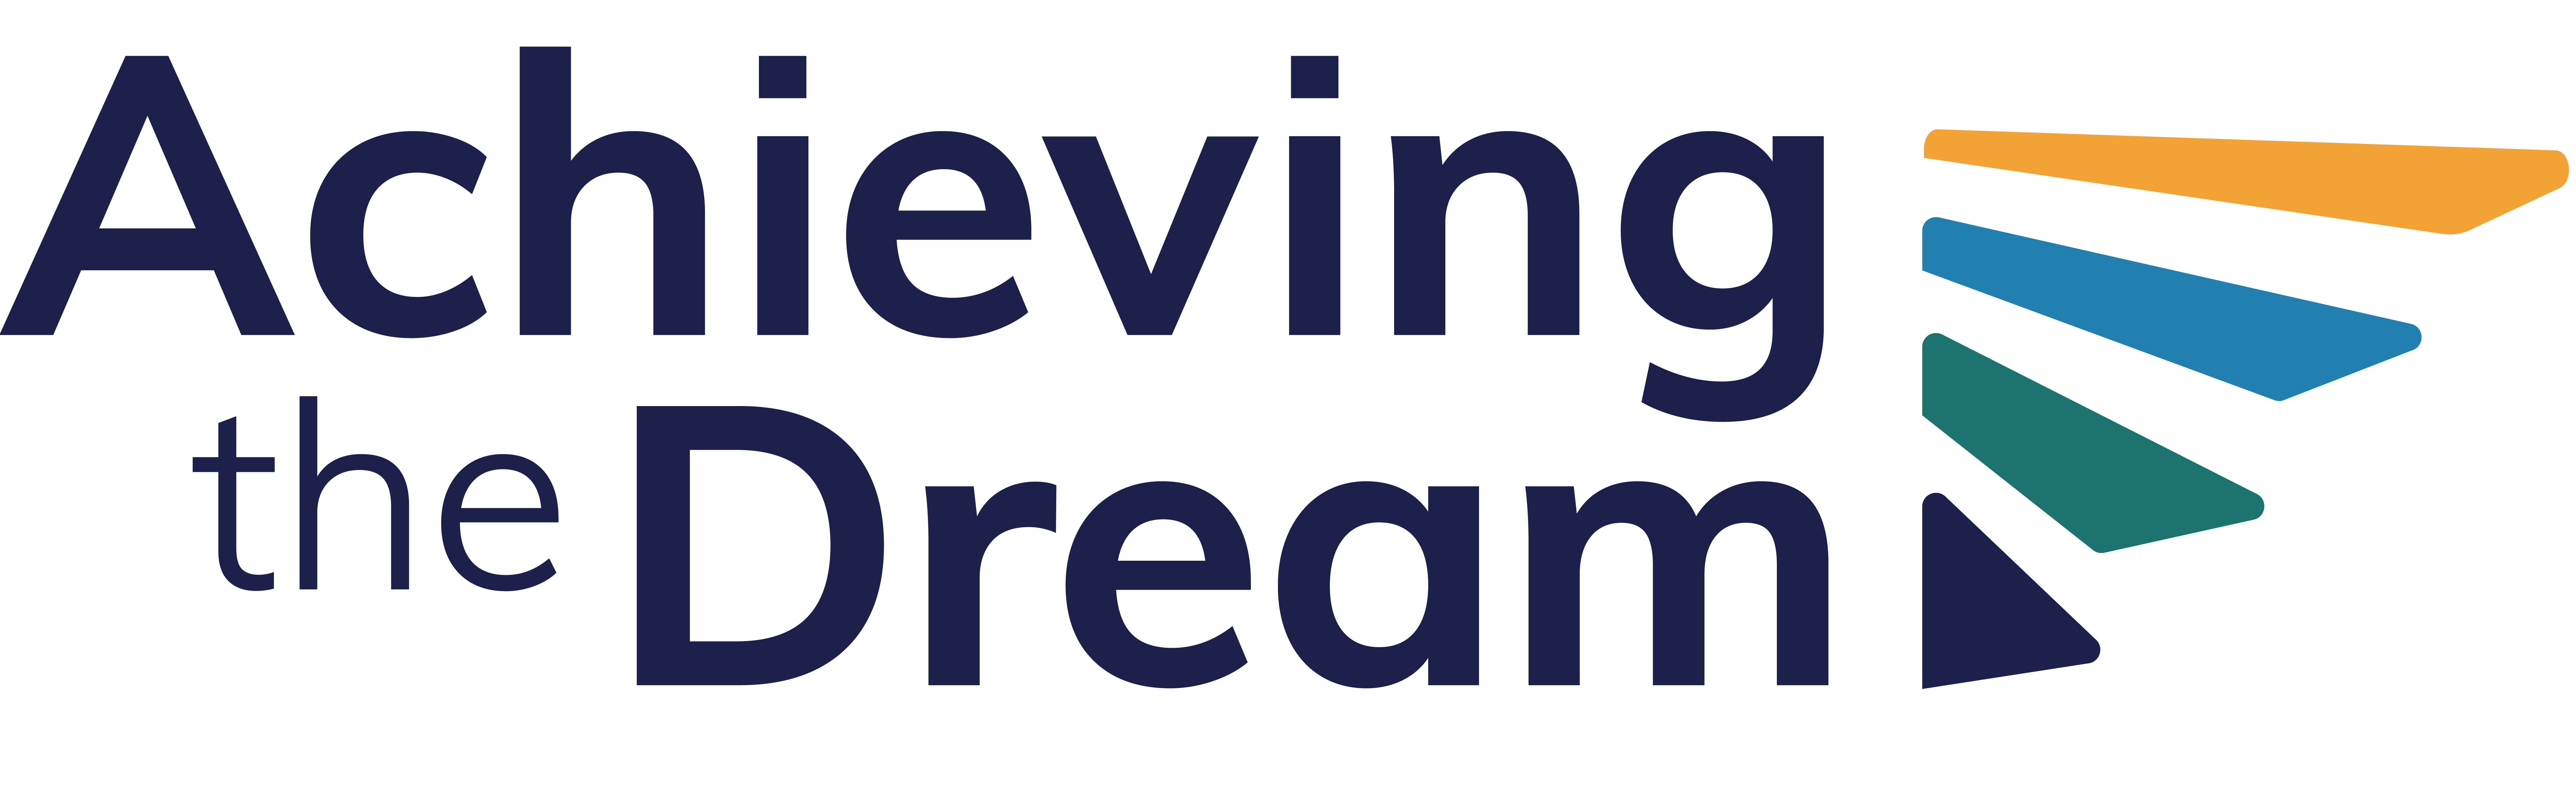 Achieving the Dream logo